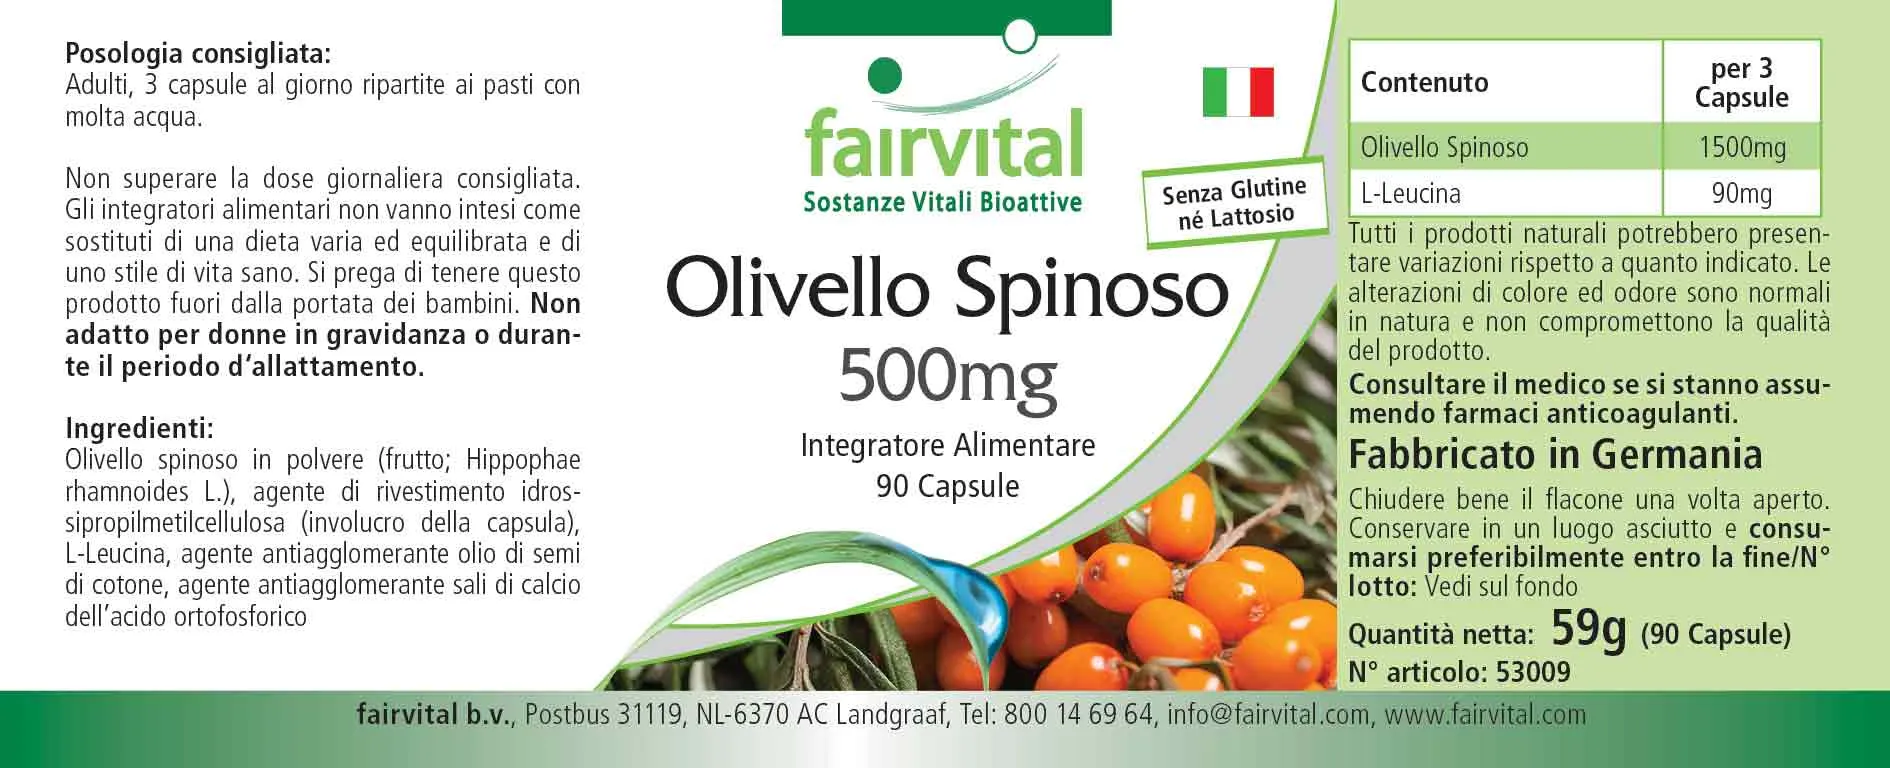 Olivello spinoso 500mg - 90 capsule